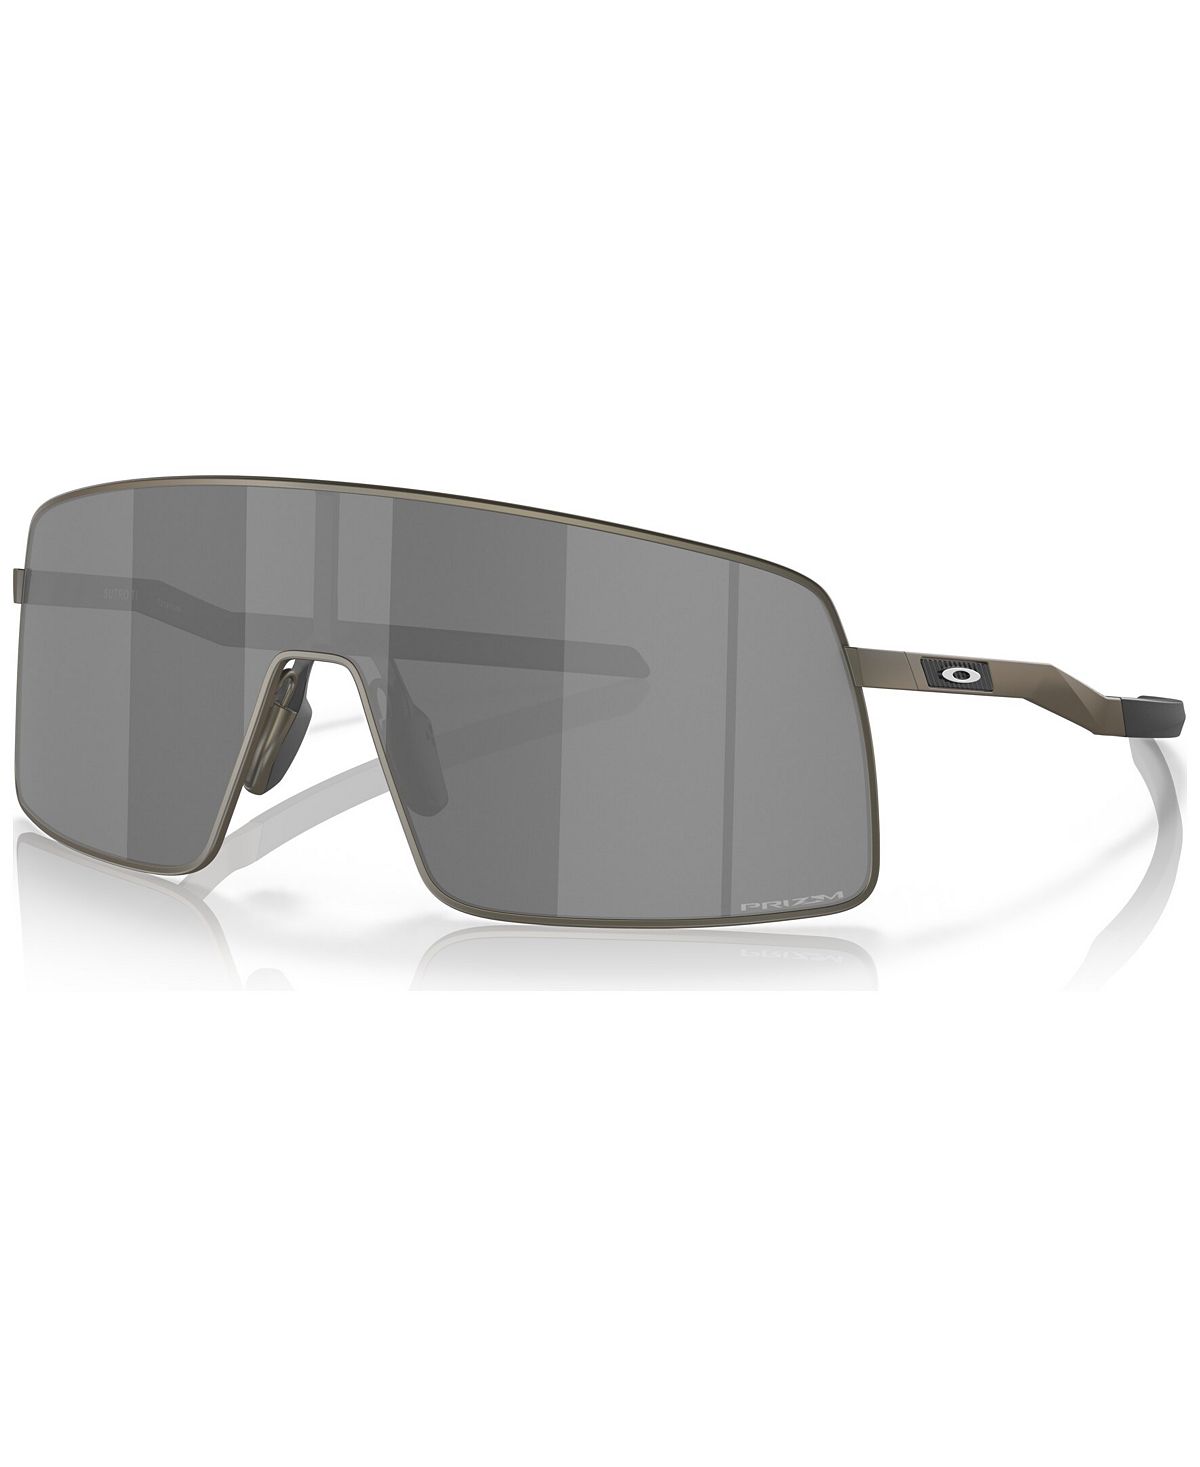 Мужские солнцезащитные очки, OO6013-0136 Oakley зажигалка lotus 6720 fusion gunmetal matte